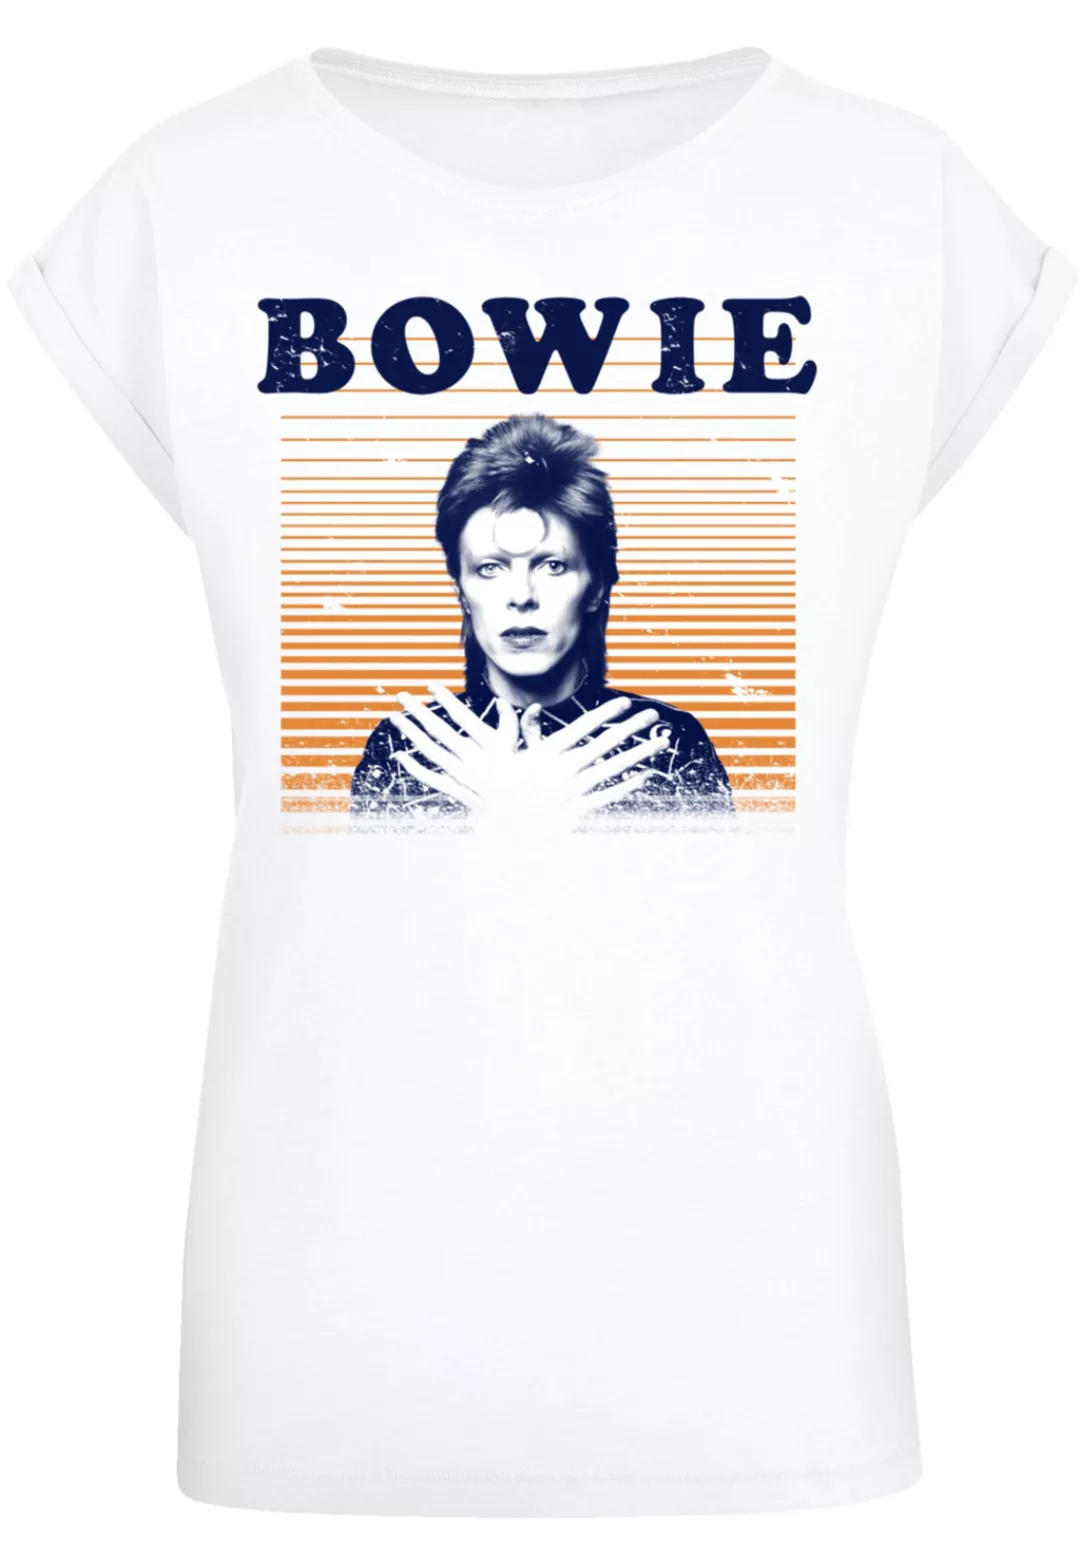 F4NT4STIC T-Shirt "David Bowie Black Tie White Noise", Print günstig online kaufen